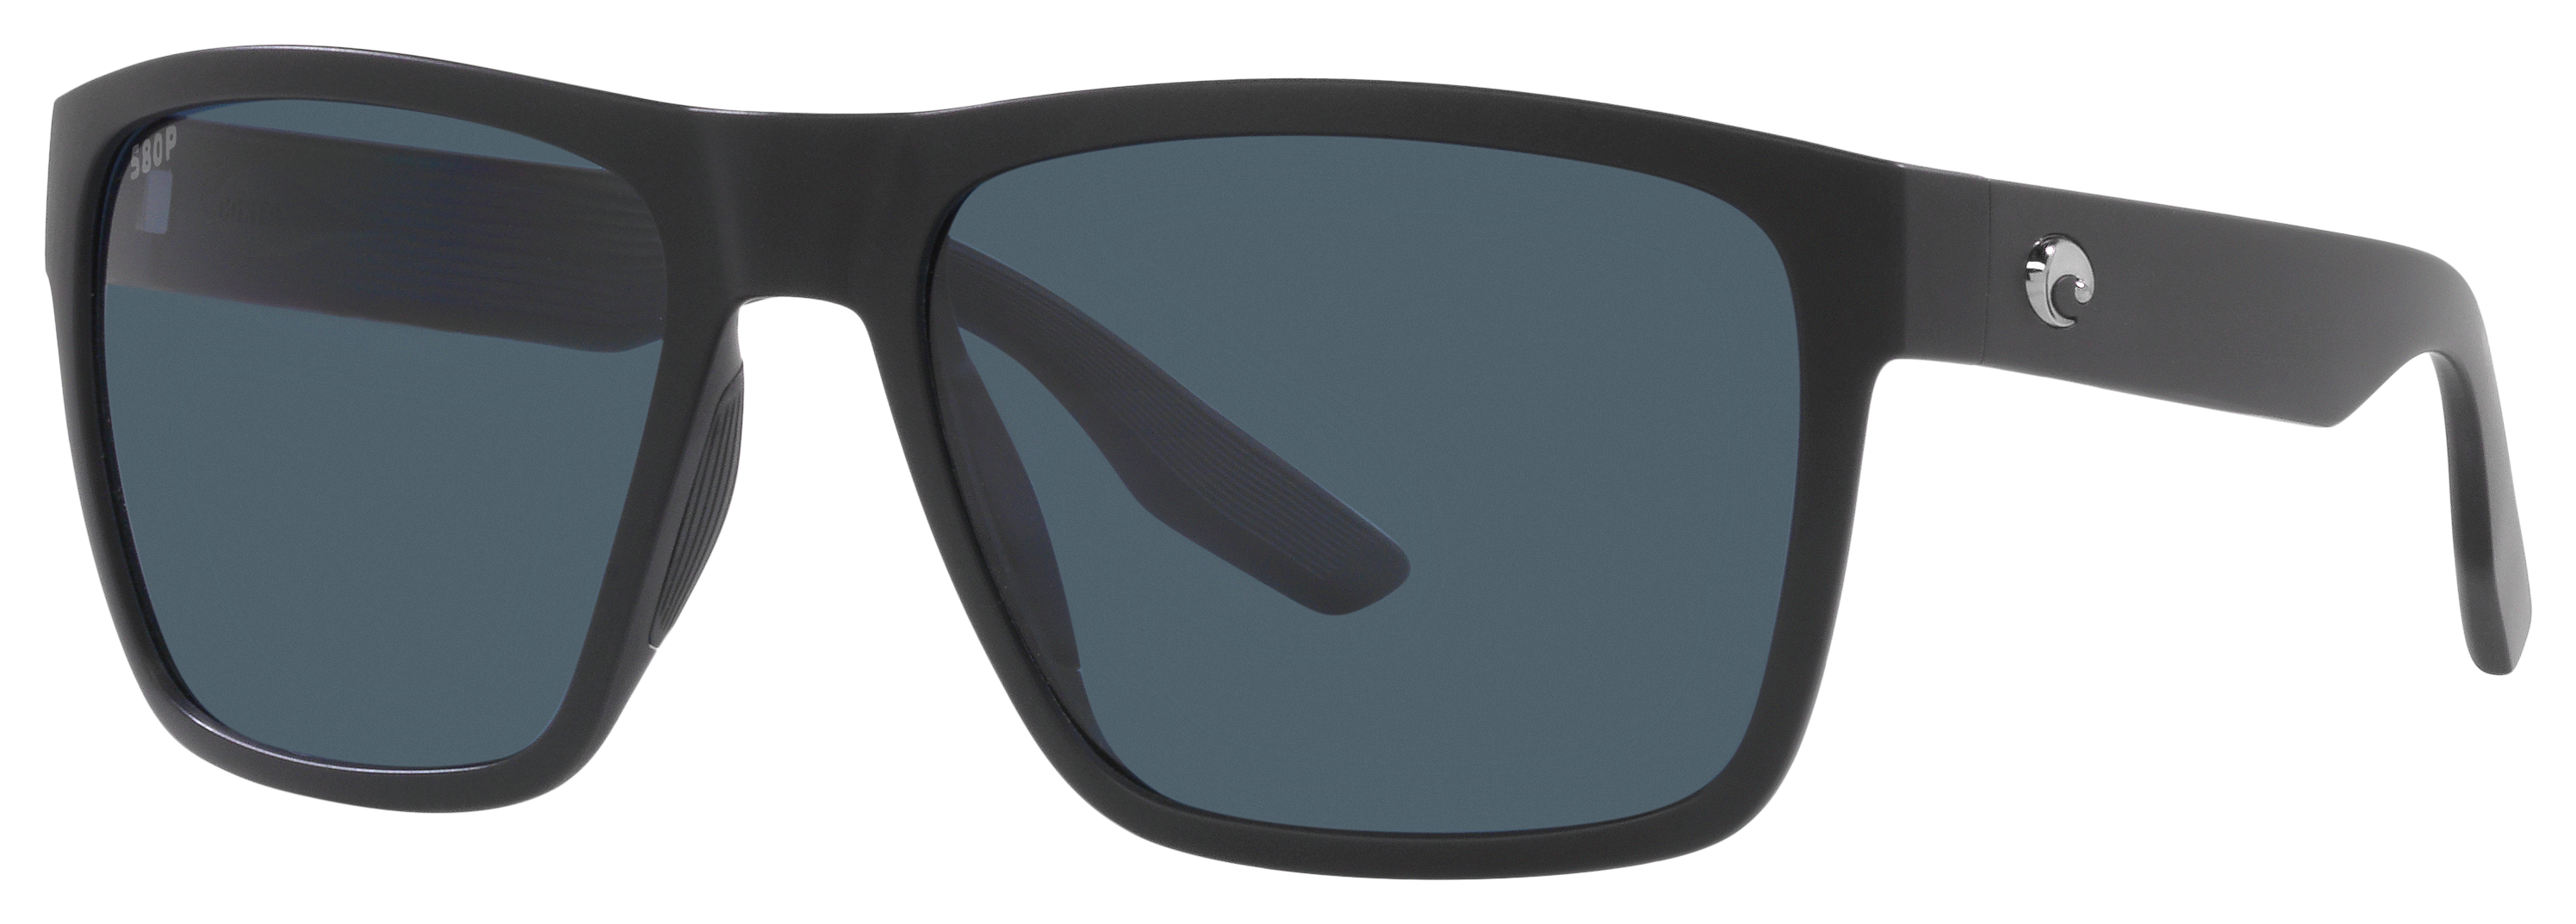 Costa Del Mar Paunch XL 580P Polarized Sunglasses